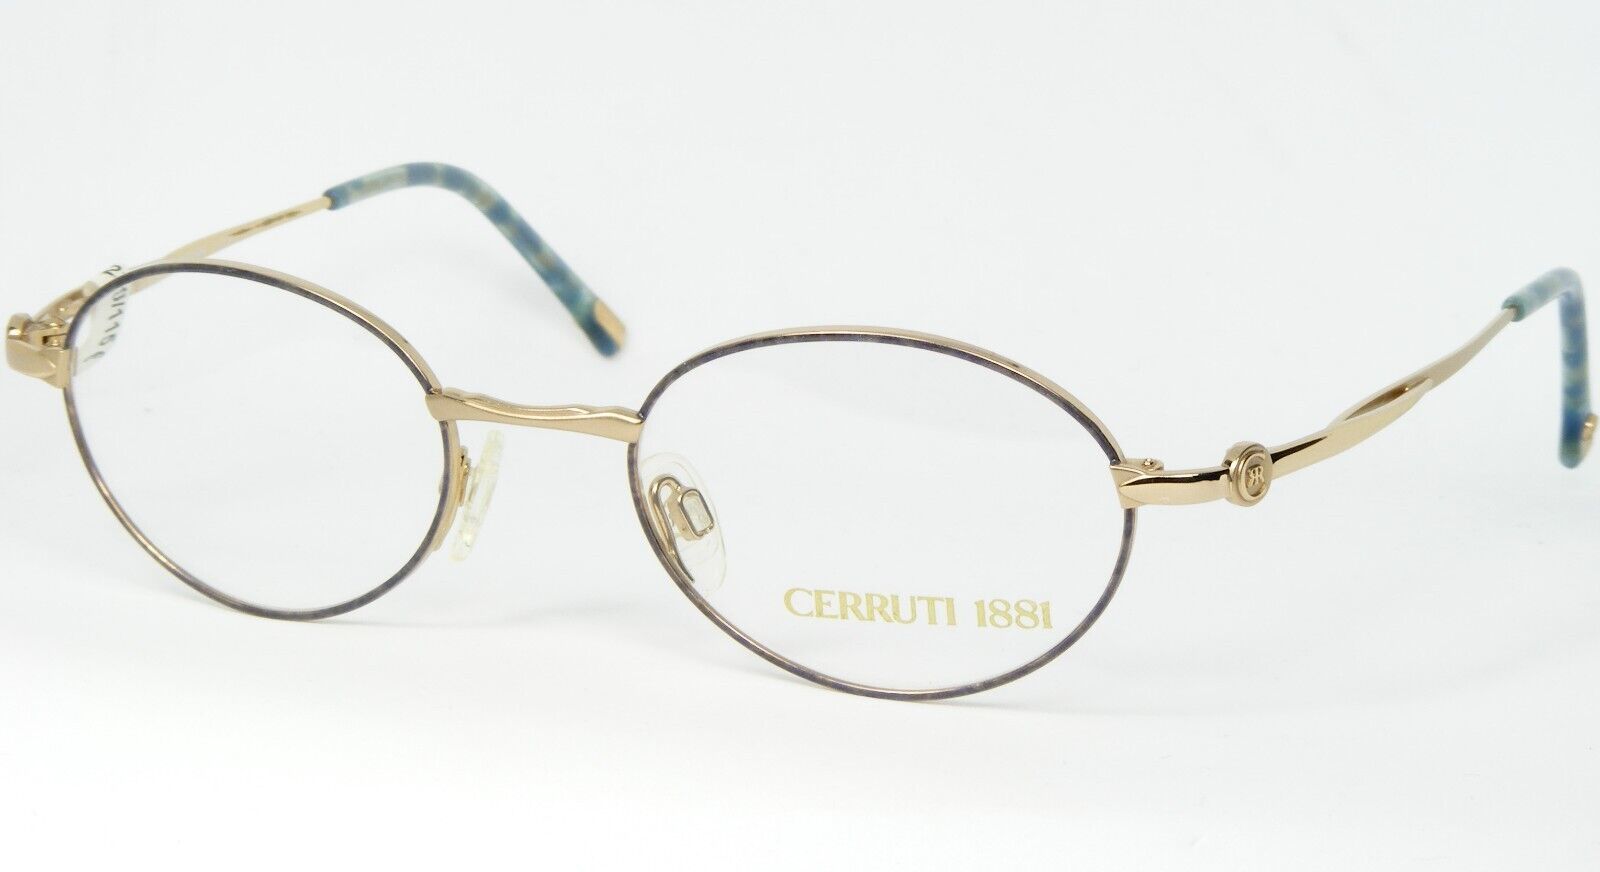 Primary image for Cerruti 1881 C 1105 Gp Oro / Blu/Verde Montatura Occhiali C1105 49-20-130mm